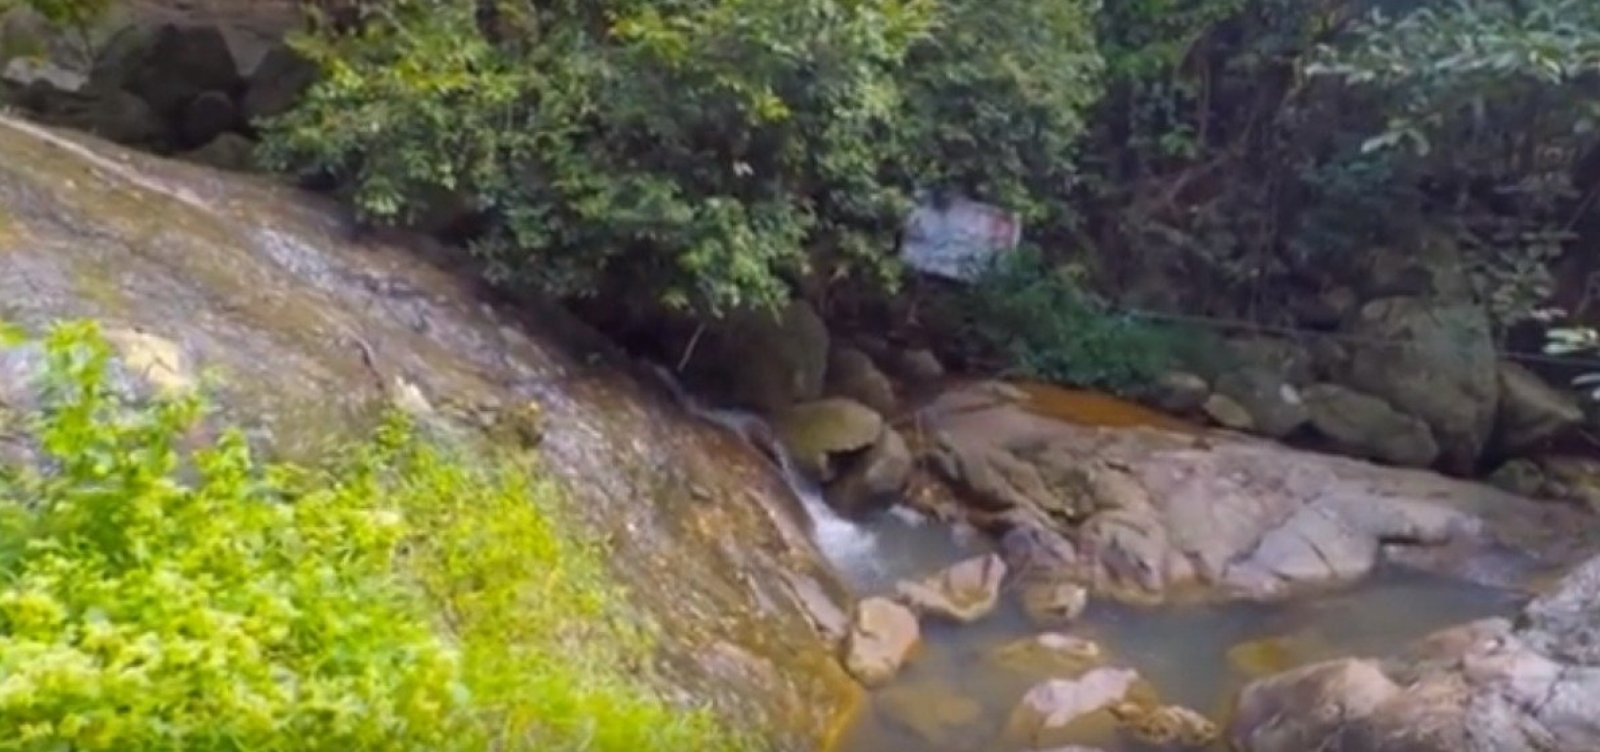 Turista francês morre ao fazer selfie em cascata na Tailândia